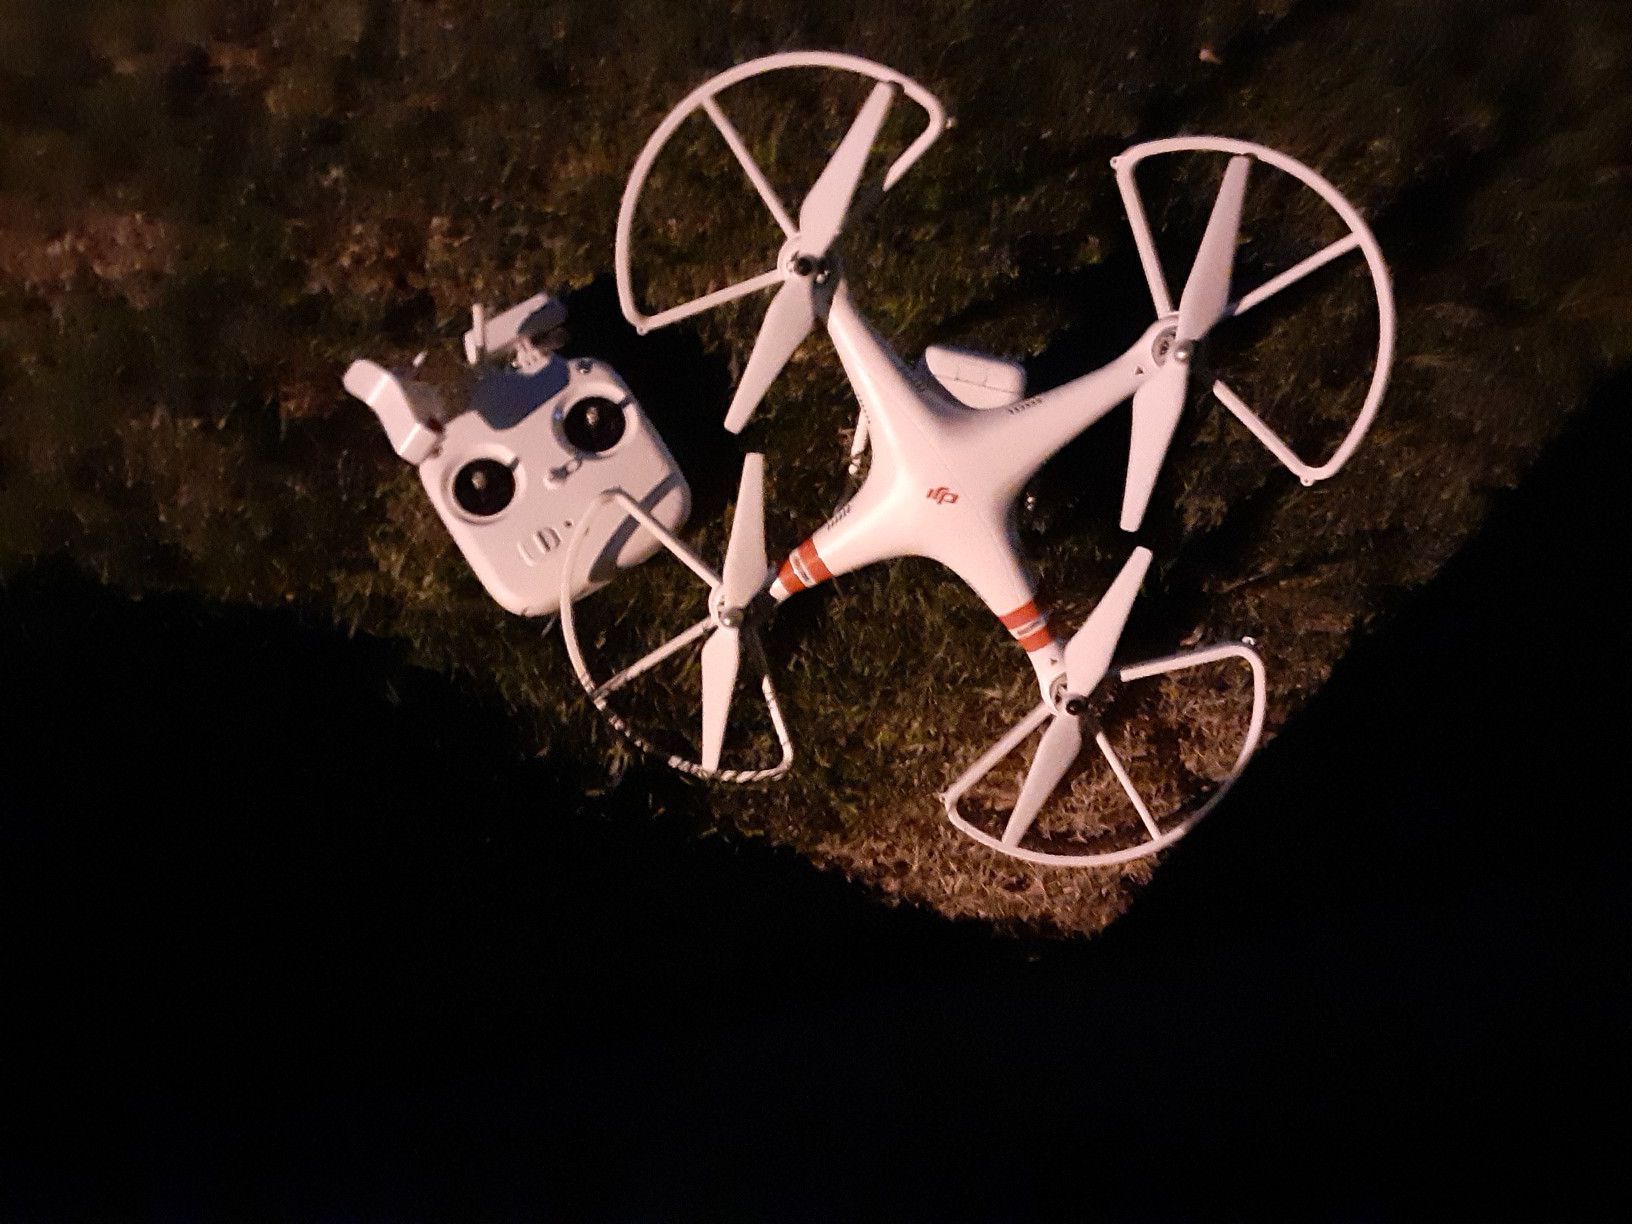 DJI drone Phantom $200